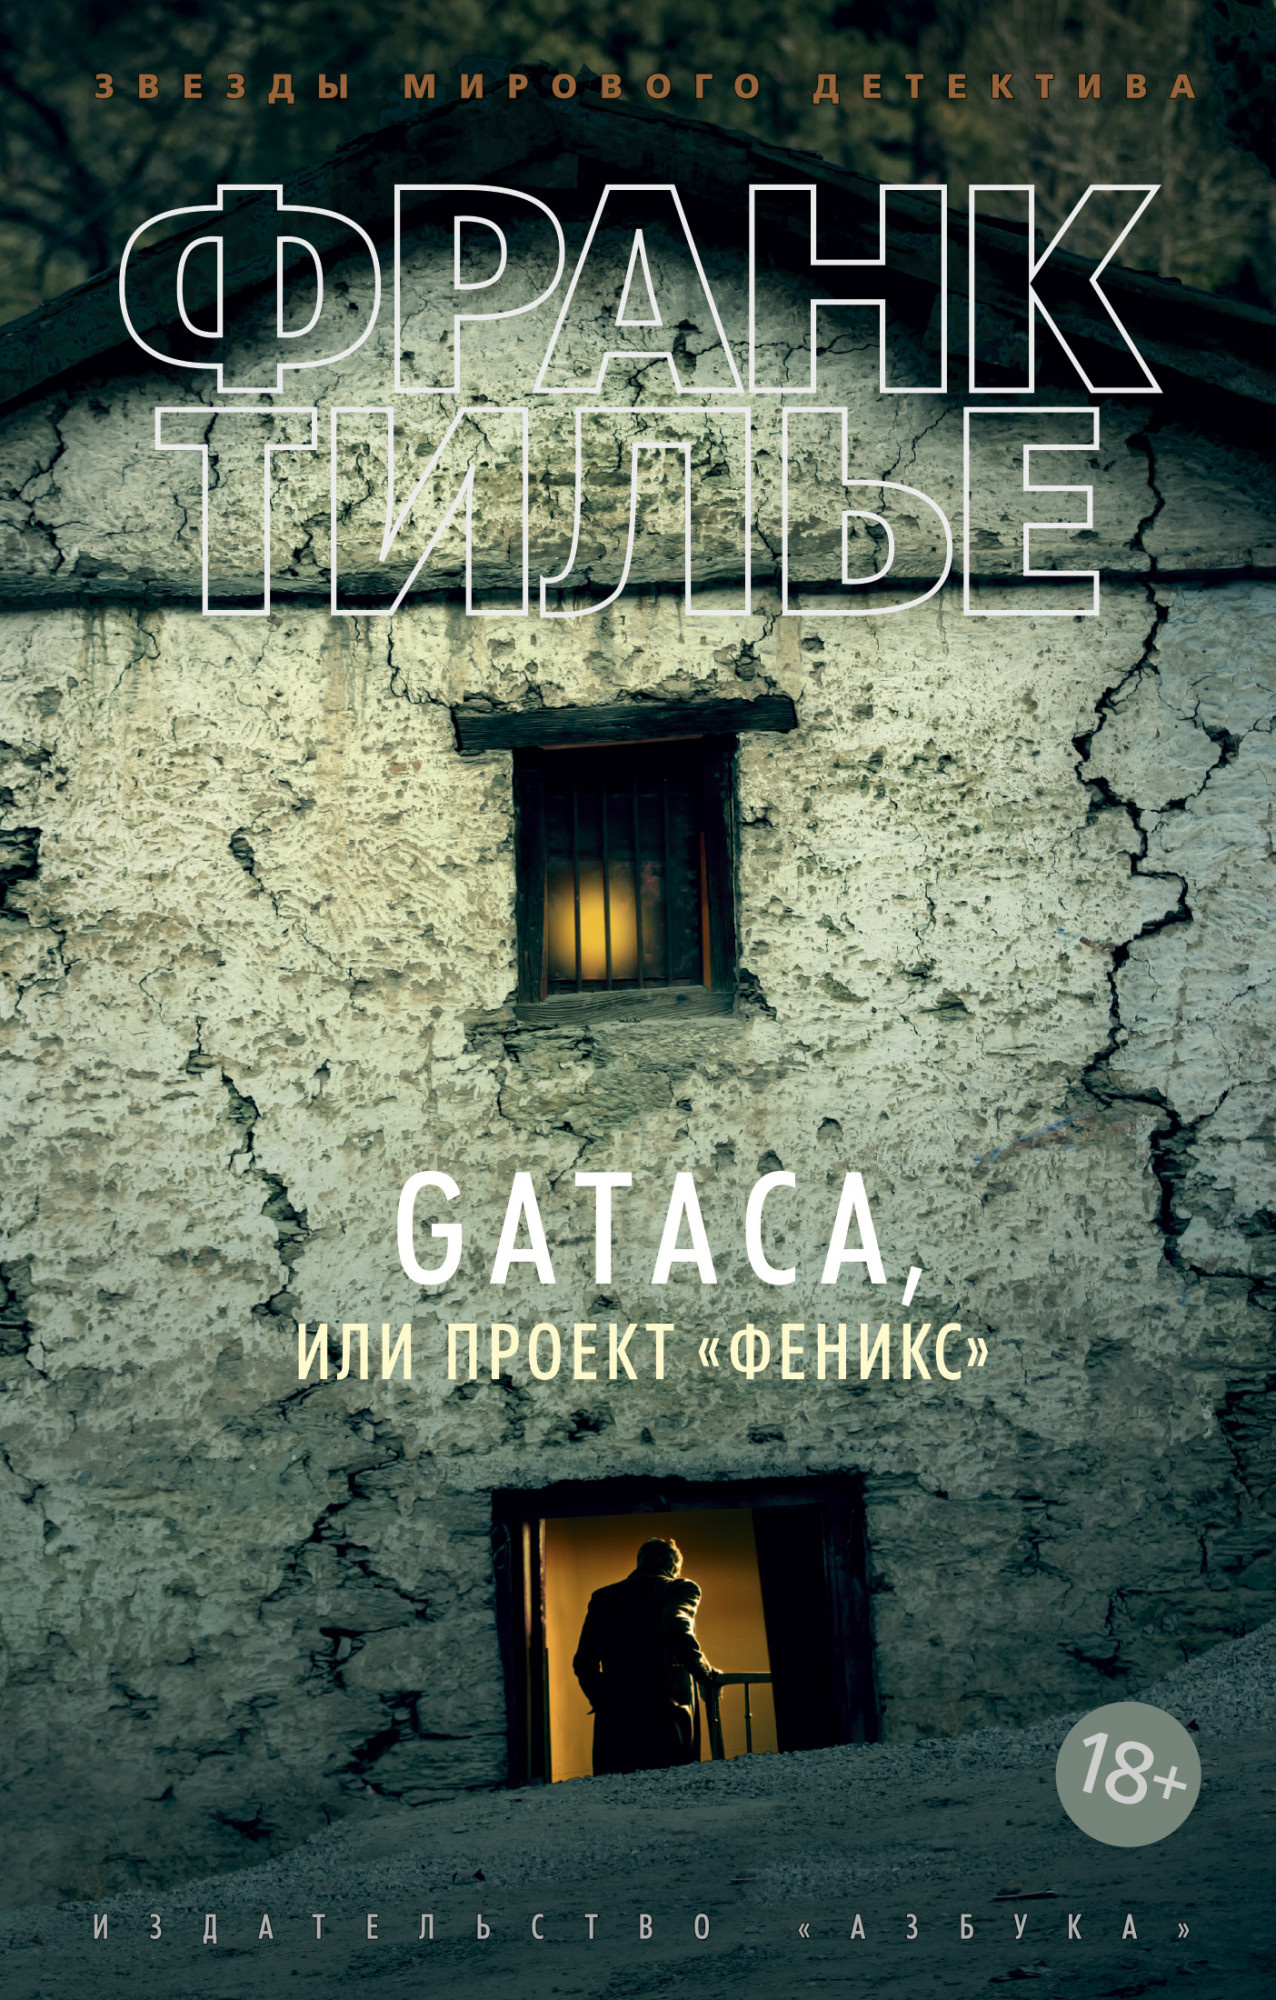 GATACA, или Проект "Феникс". Автор — Франк Тилье. 